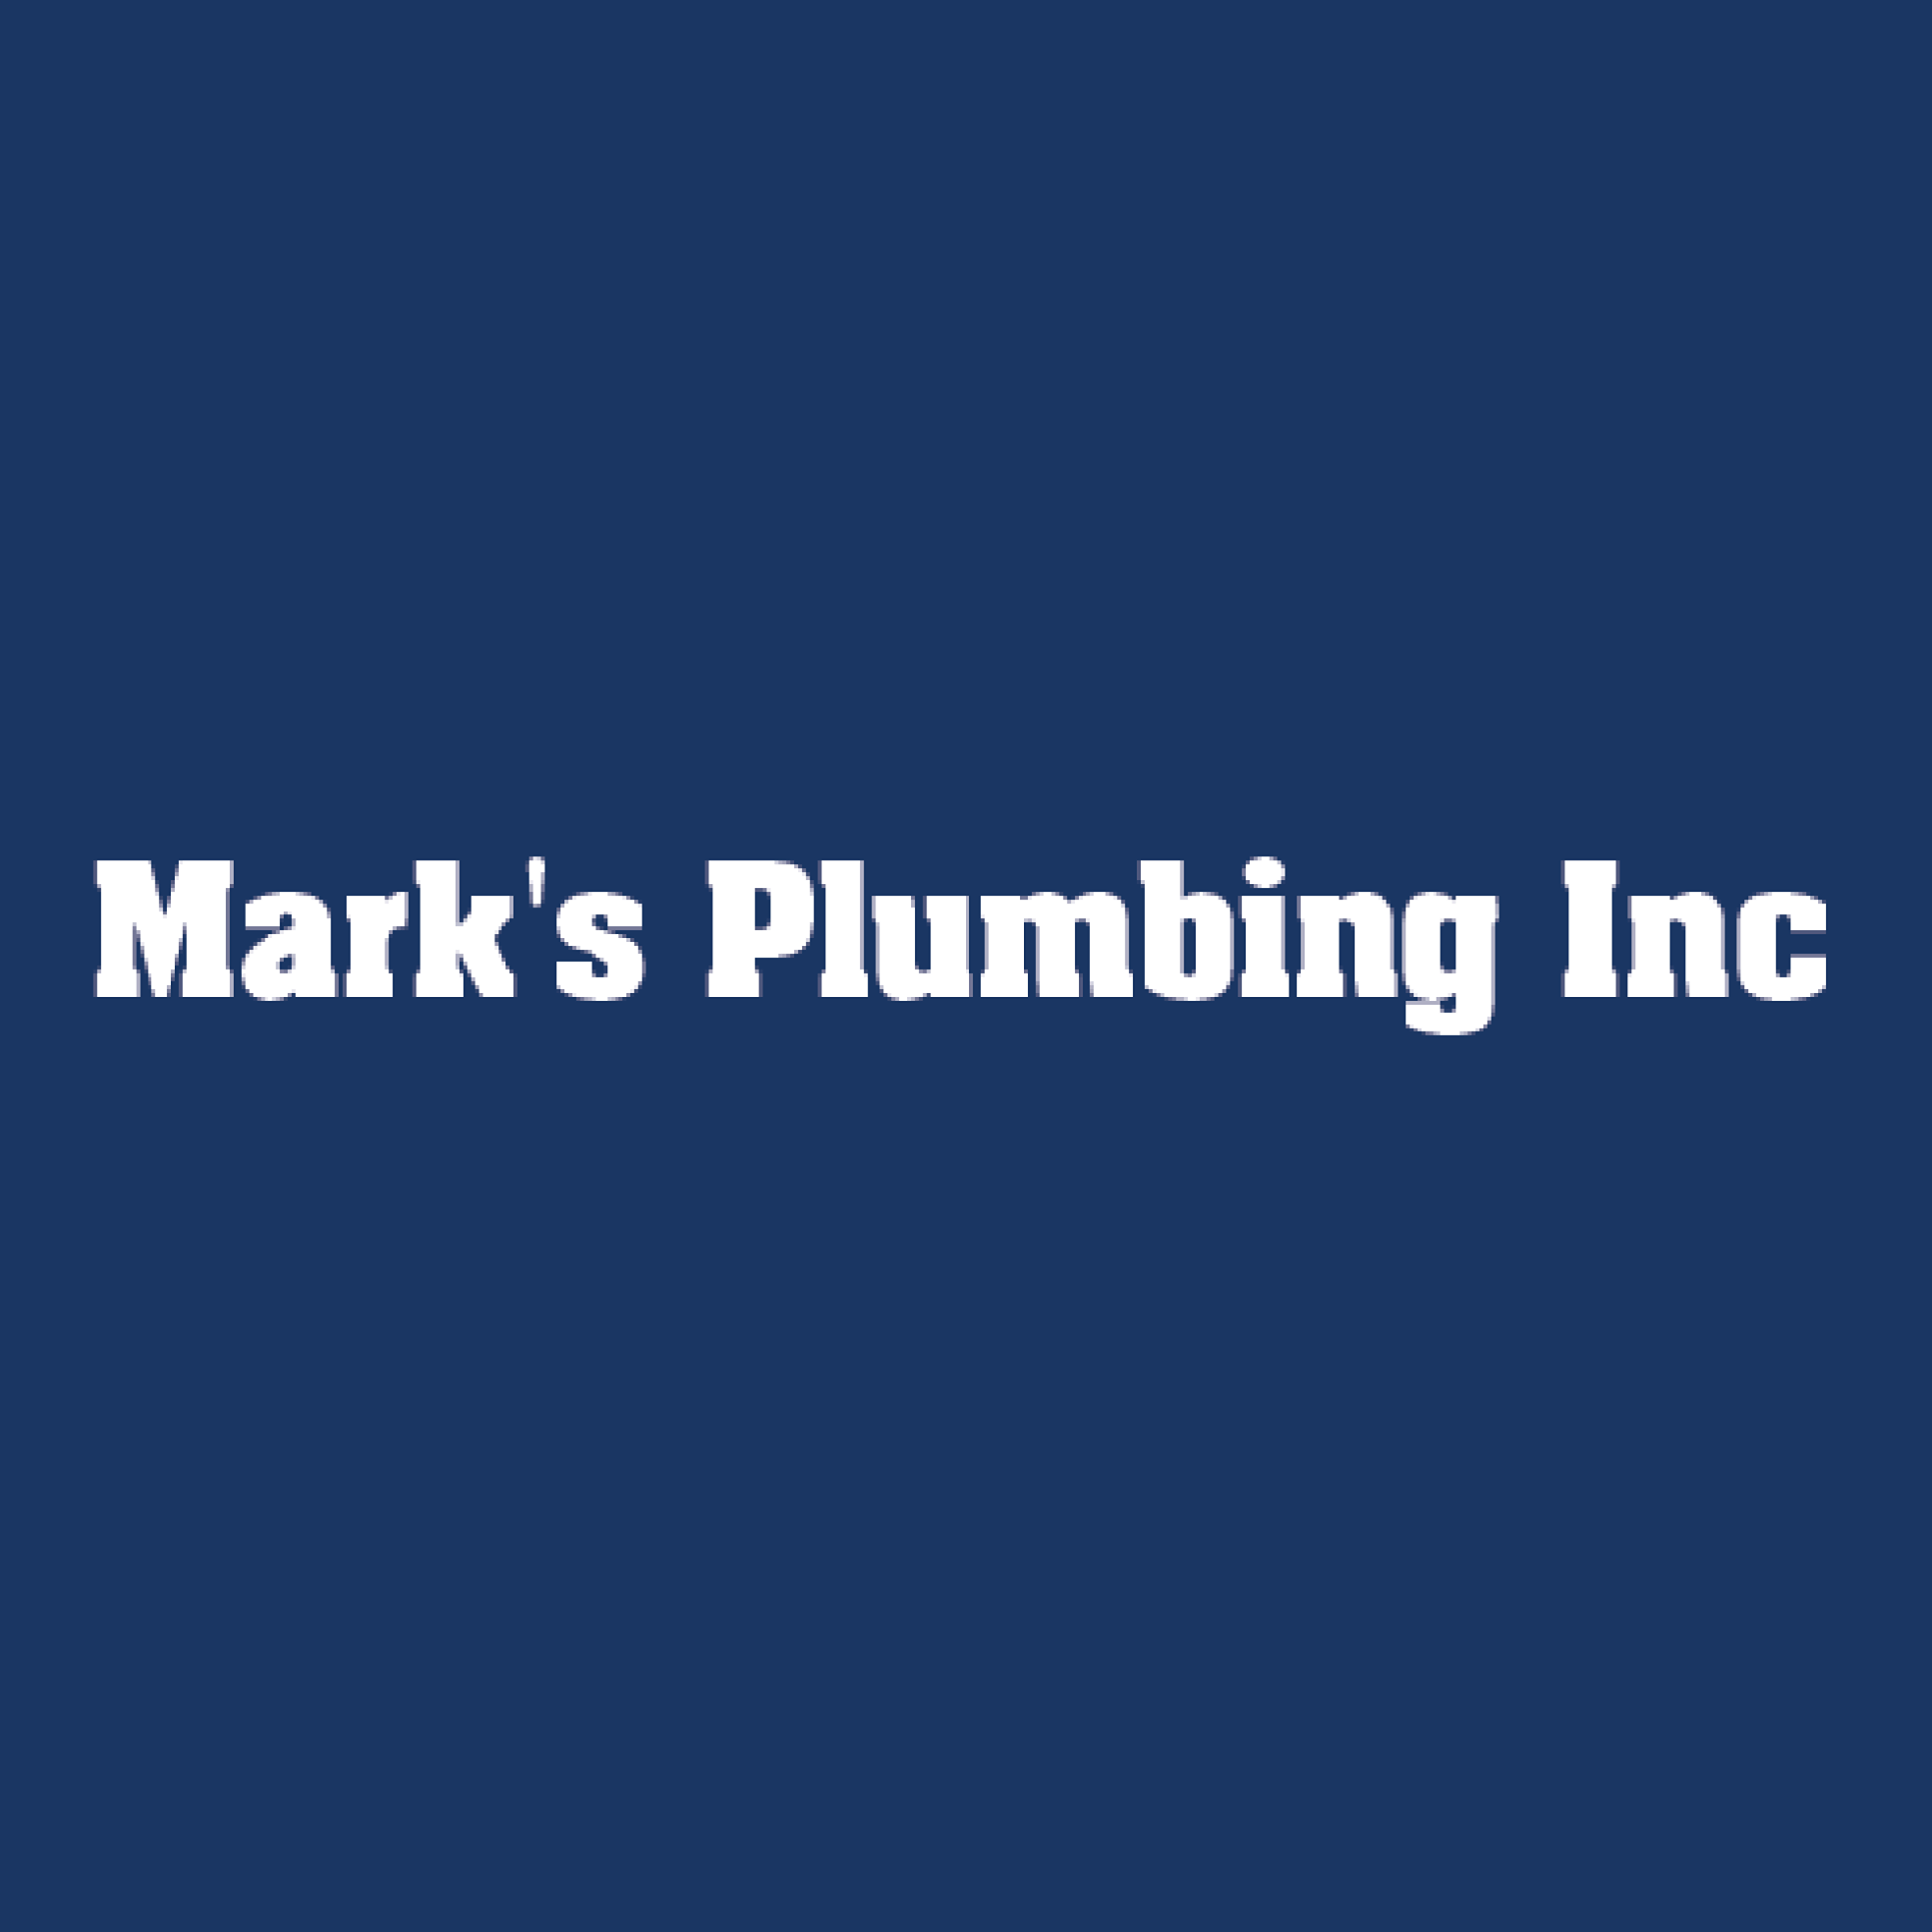 Mark's Plumbing Inc